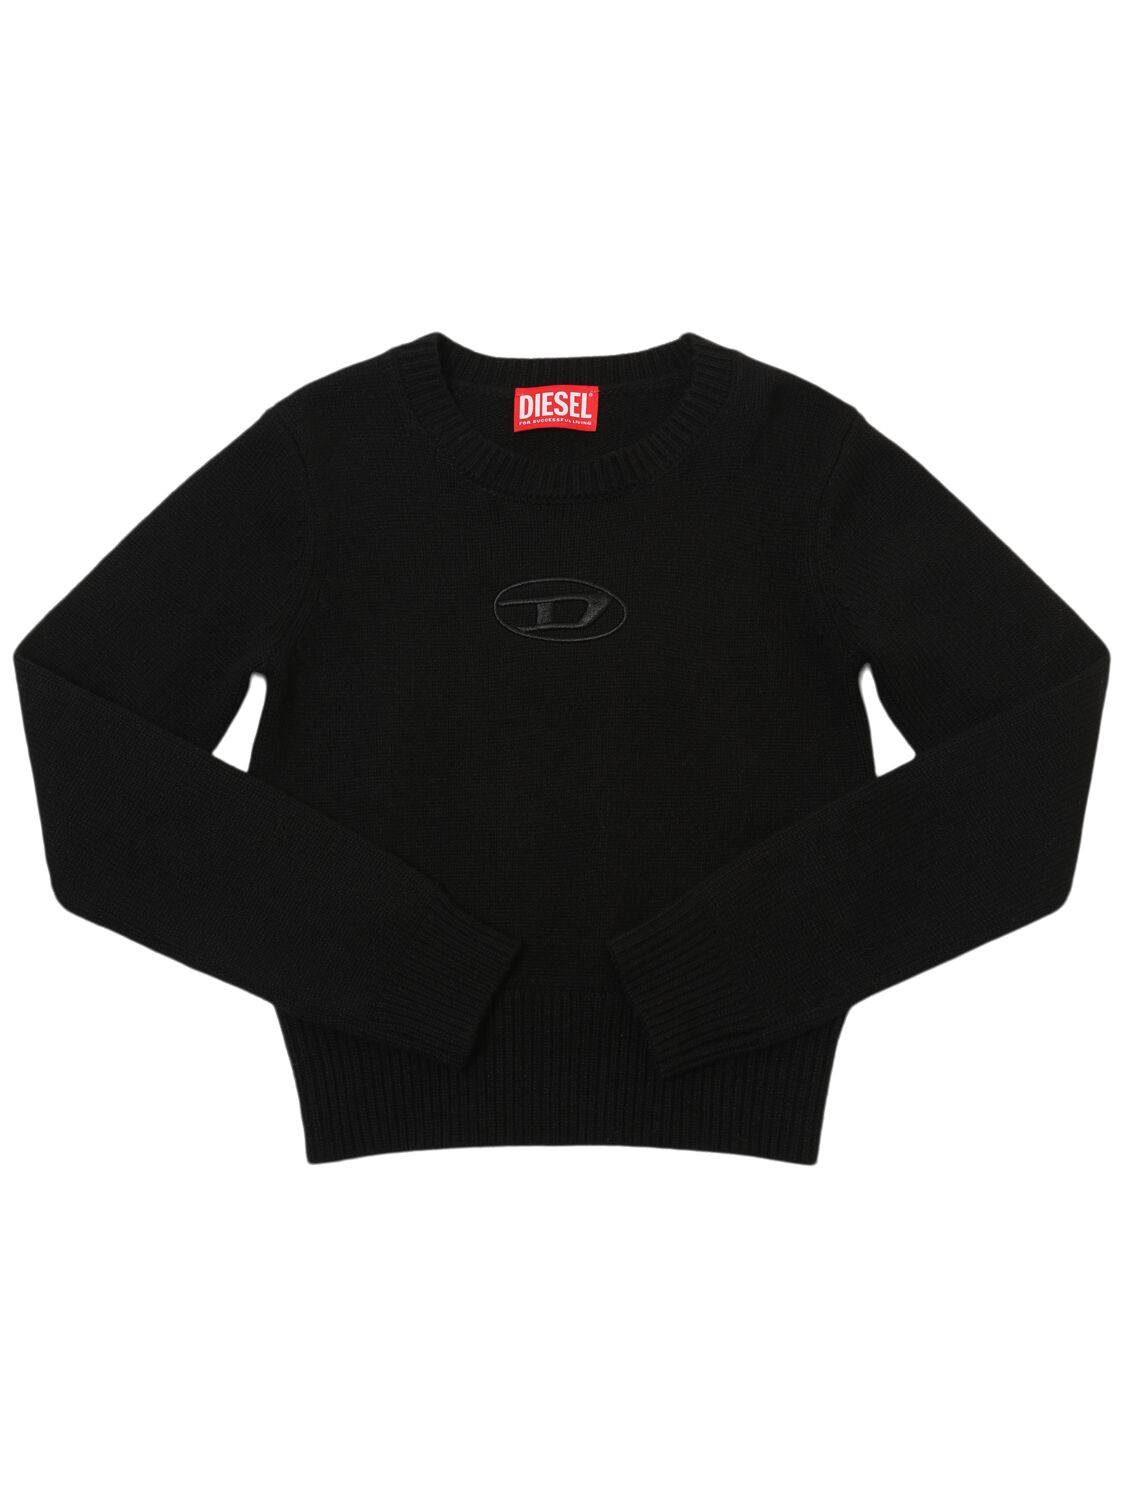 Diesel Wool Blend Knit Sweater W/logo In Black